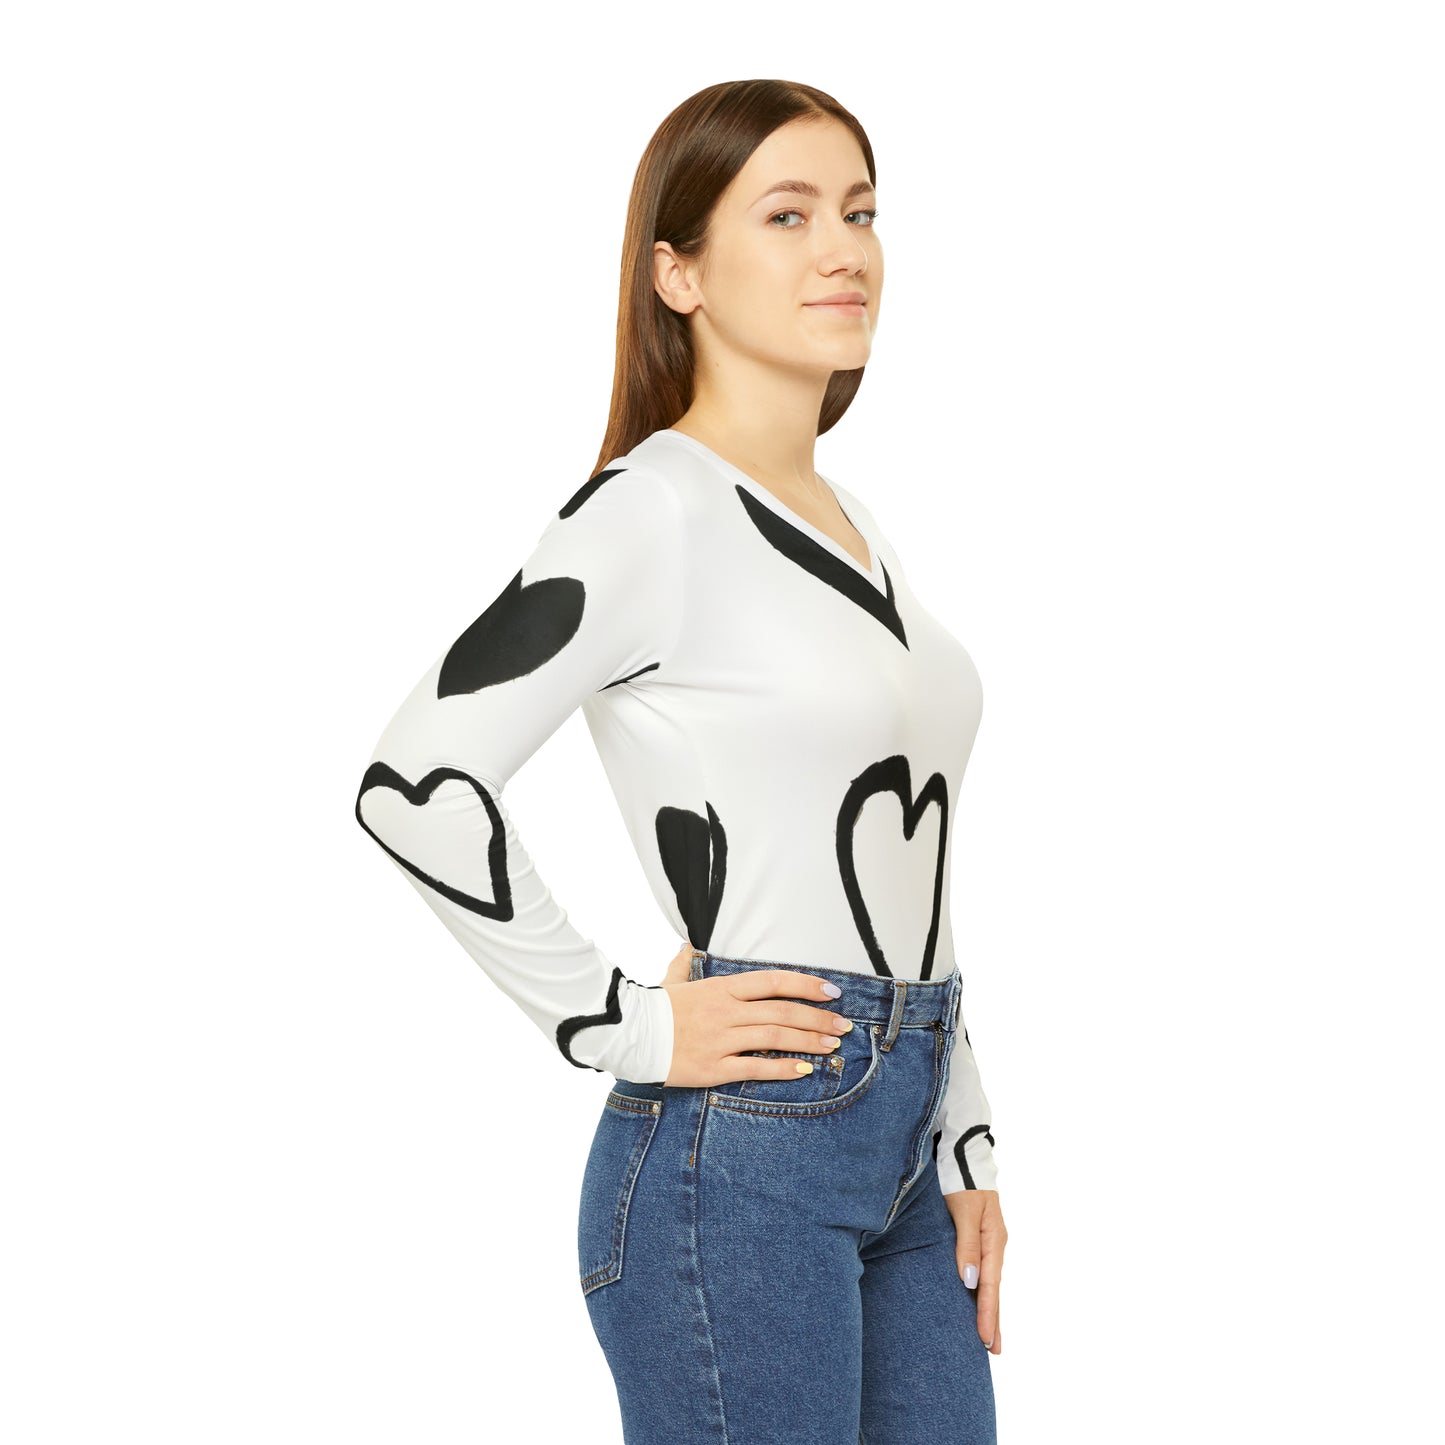 Cion Irene - Women's Long-Sleeve V-neck Shirt